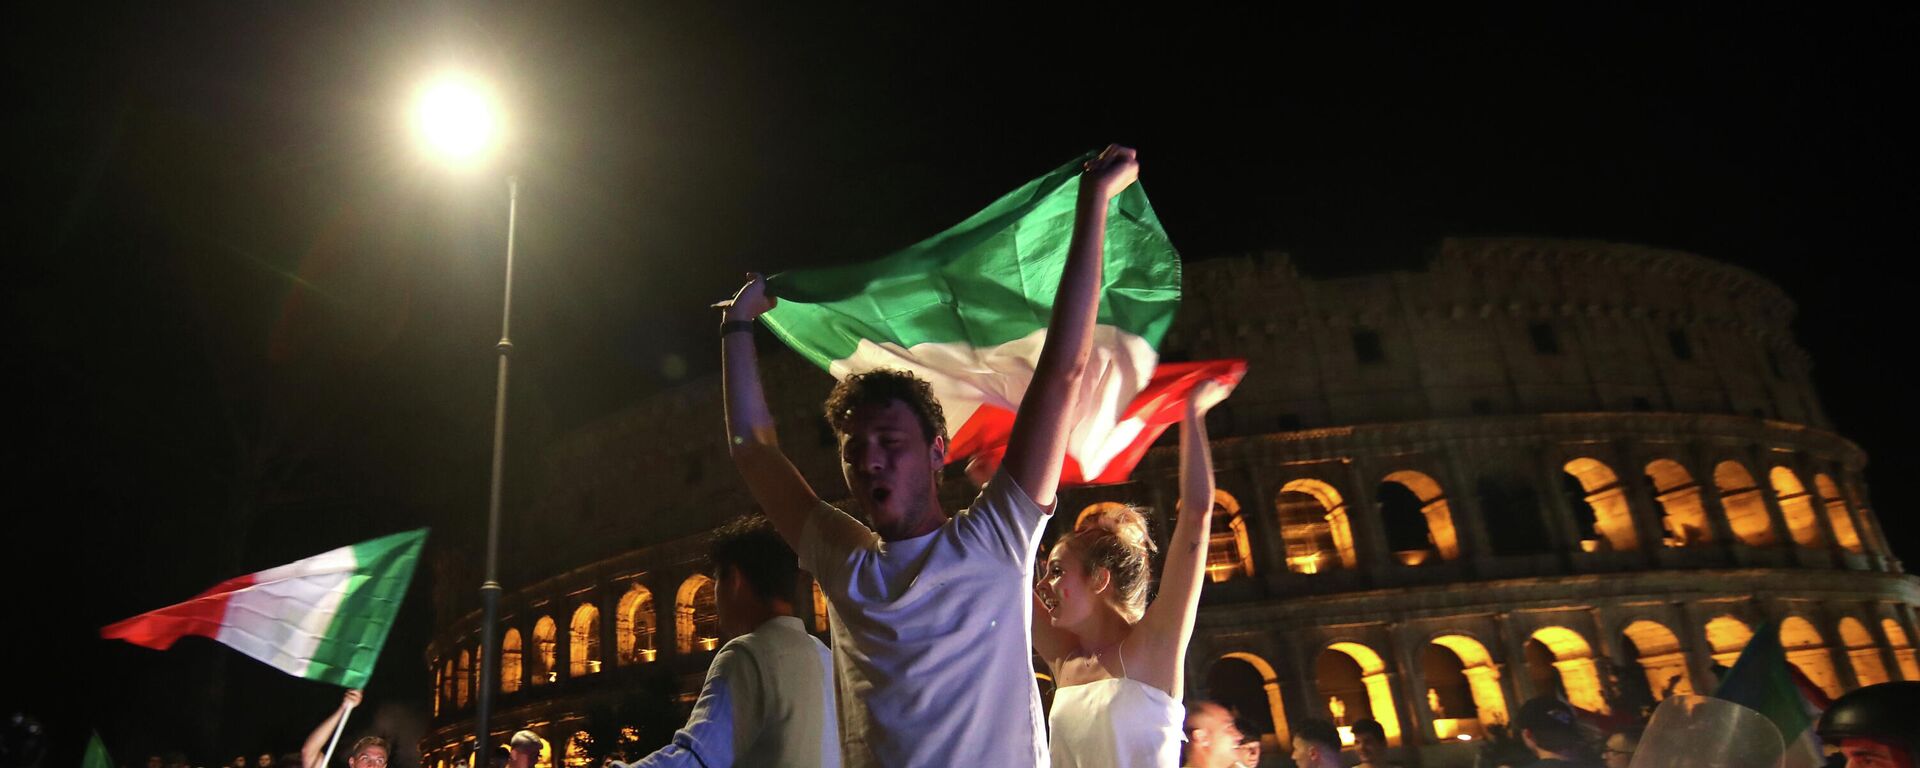 Festejos en Roma tras la victoria de Italia en Eurocopa 2020 - Sputnik Mundo, 1920, 12.07.2021